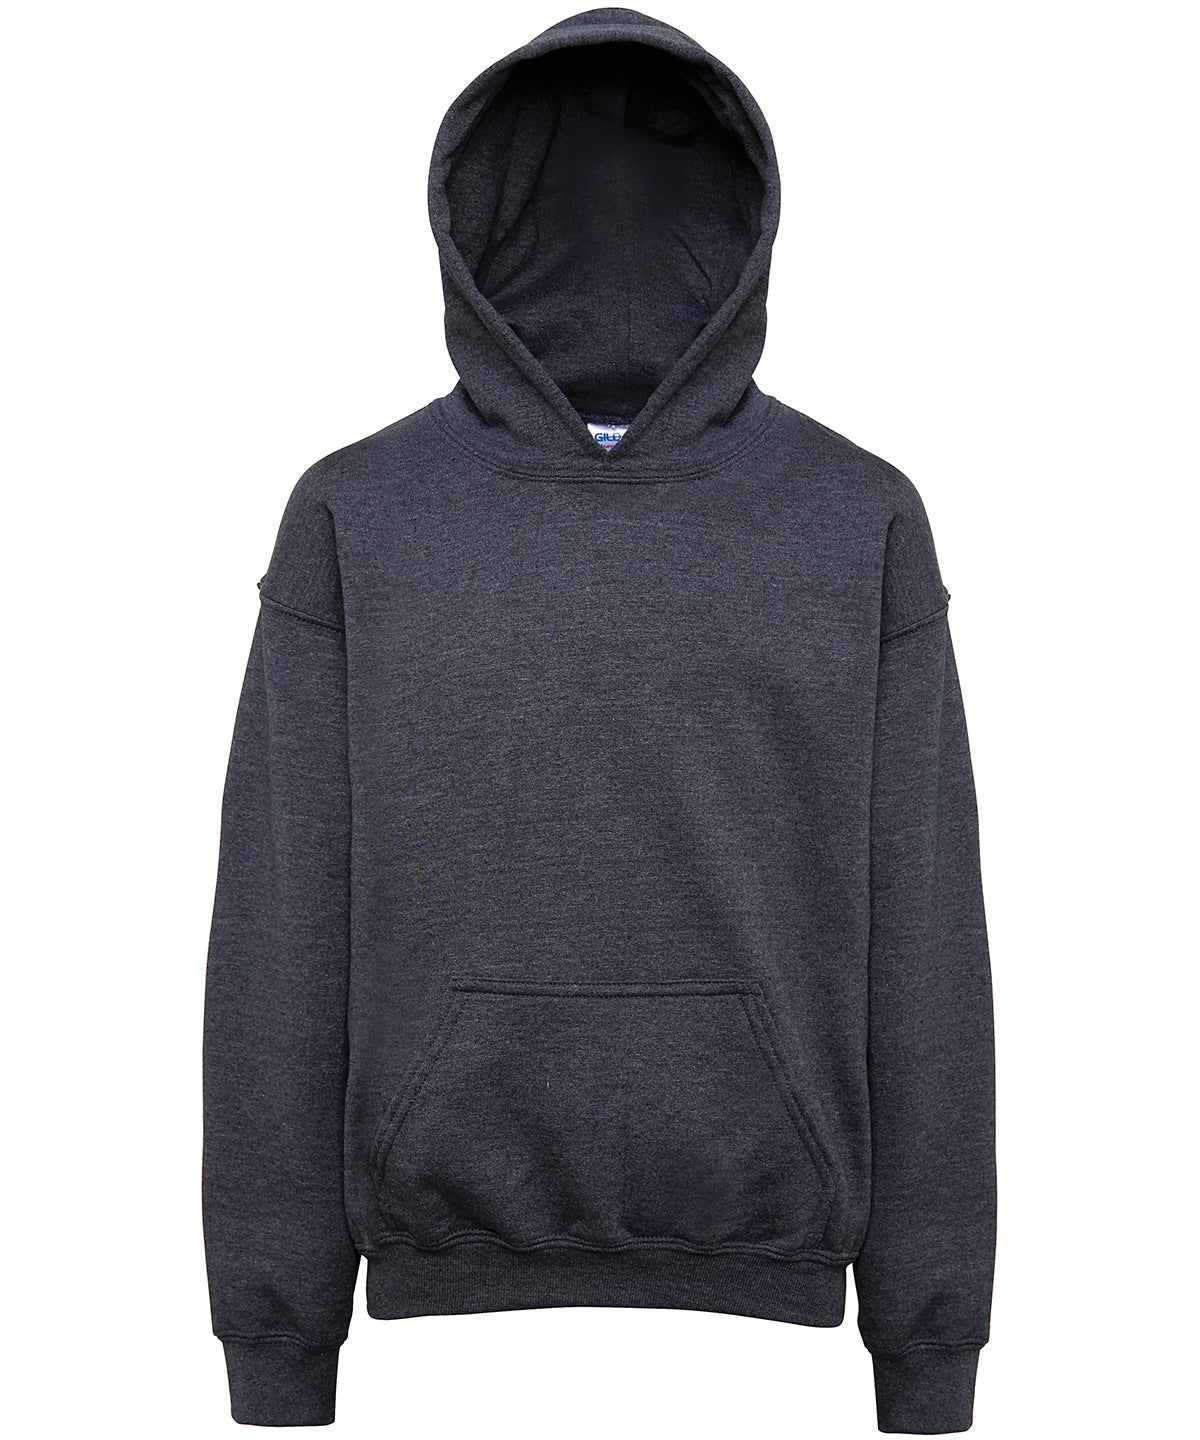 Personalised Hoodies - Black Gildan Heavy Blend™ youth hooded sweatshirt